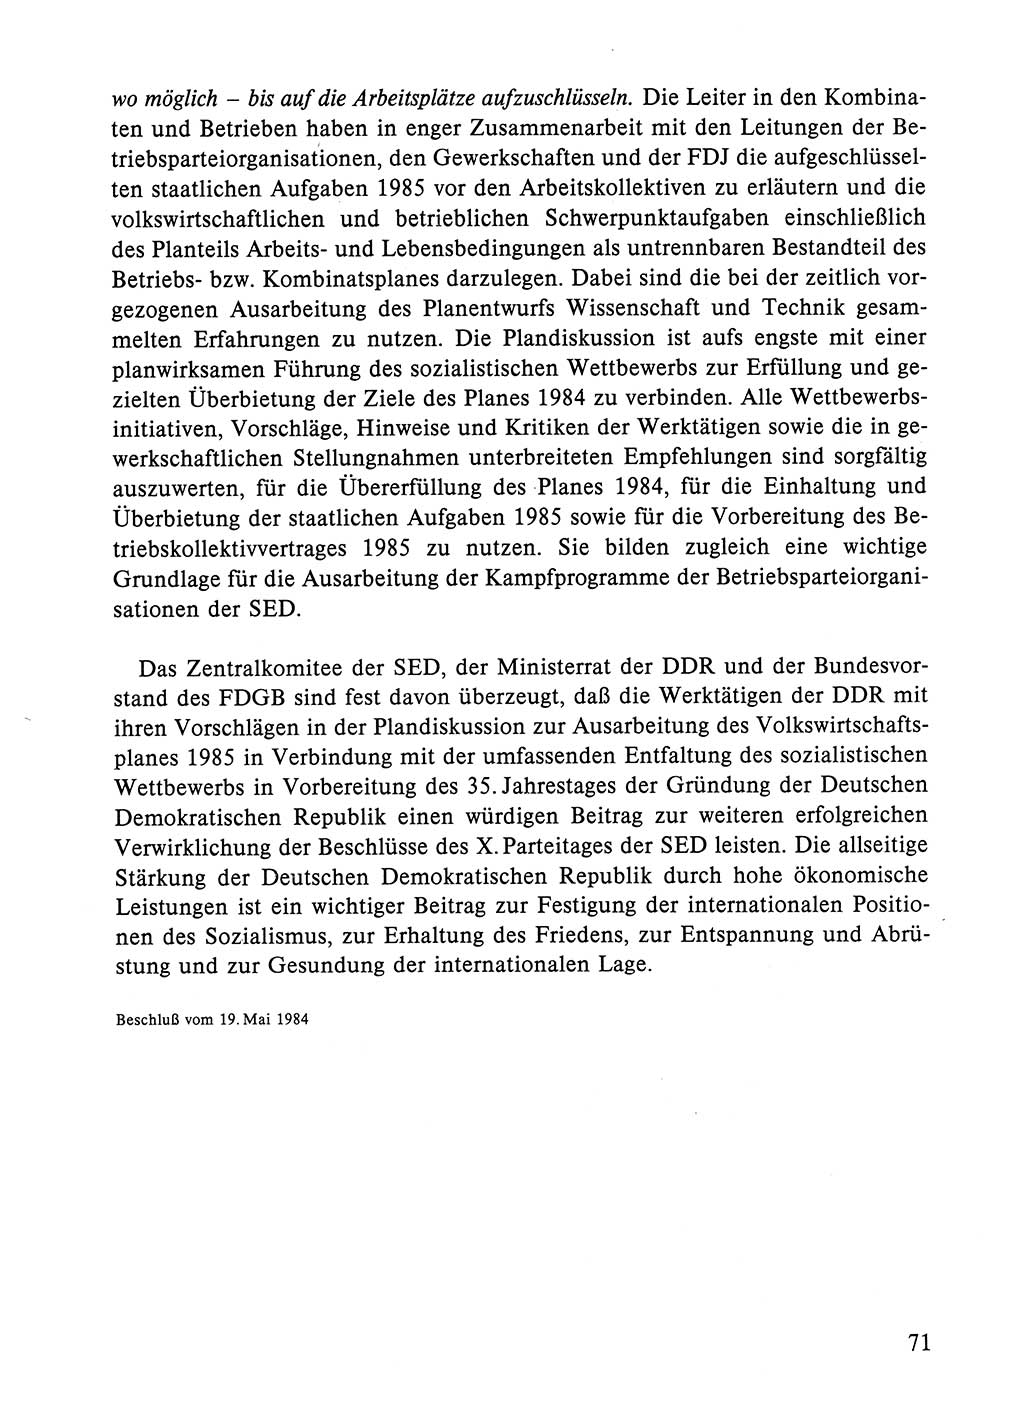 Dokumente der Sozialistischen Einheitspartei Deutschlands (SED) [Deutsche Demokratische Republik (DDR)] 1984-1985, Seite 71 (Dok. SED DDR 1984-1985, S. 71)